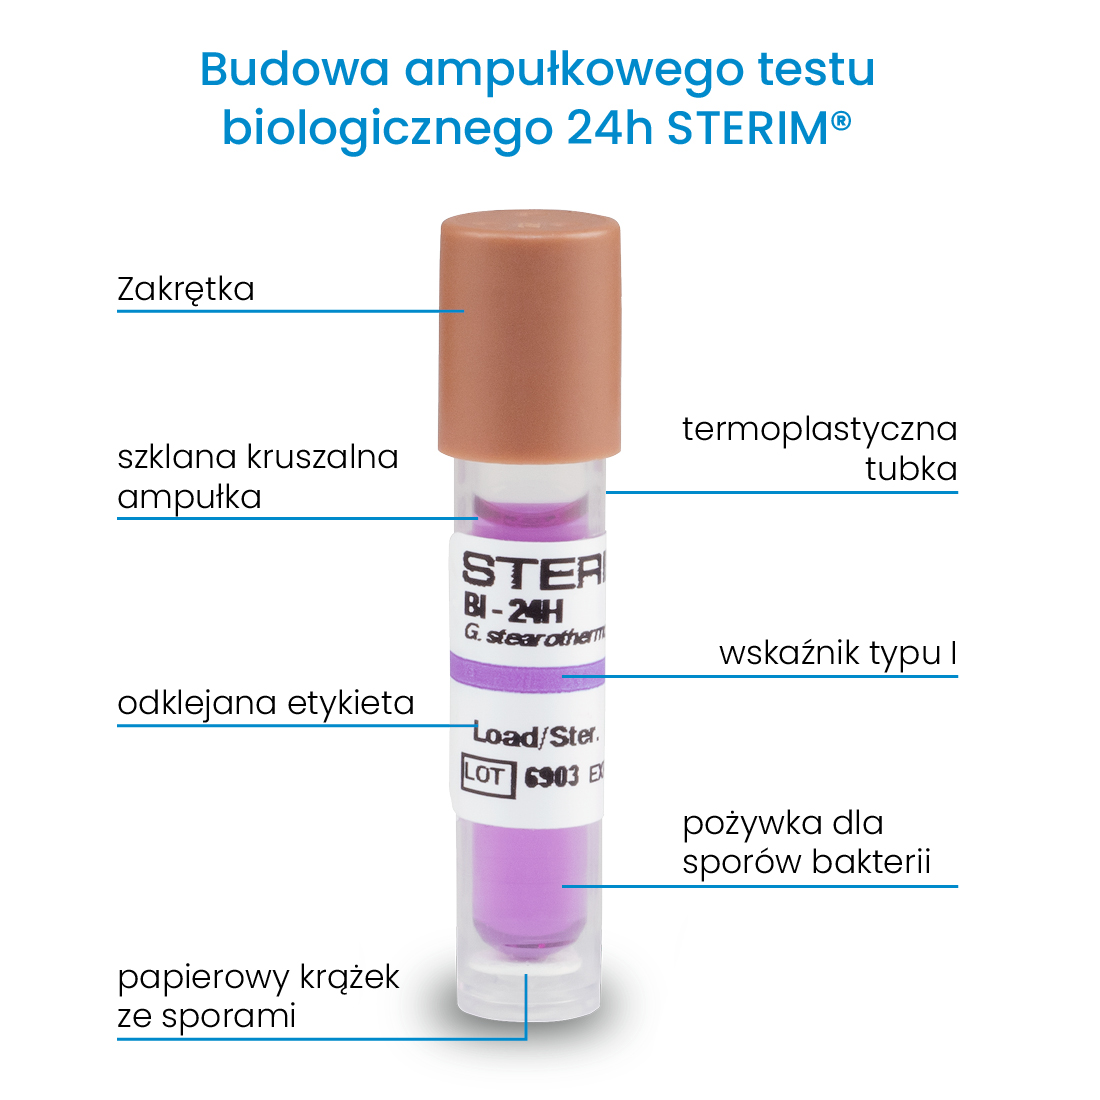 Budowa ampułkowych testów biologicznych służących do przeprowadzania kontroli sterylizacji. Testy posadają fioletową pożywkę i nasączoną sporami bakterii tabletkę. Całość zamknięta jest w kruszalnej szklanej ampułce oraz termoplastycznej tubce.